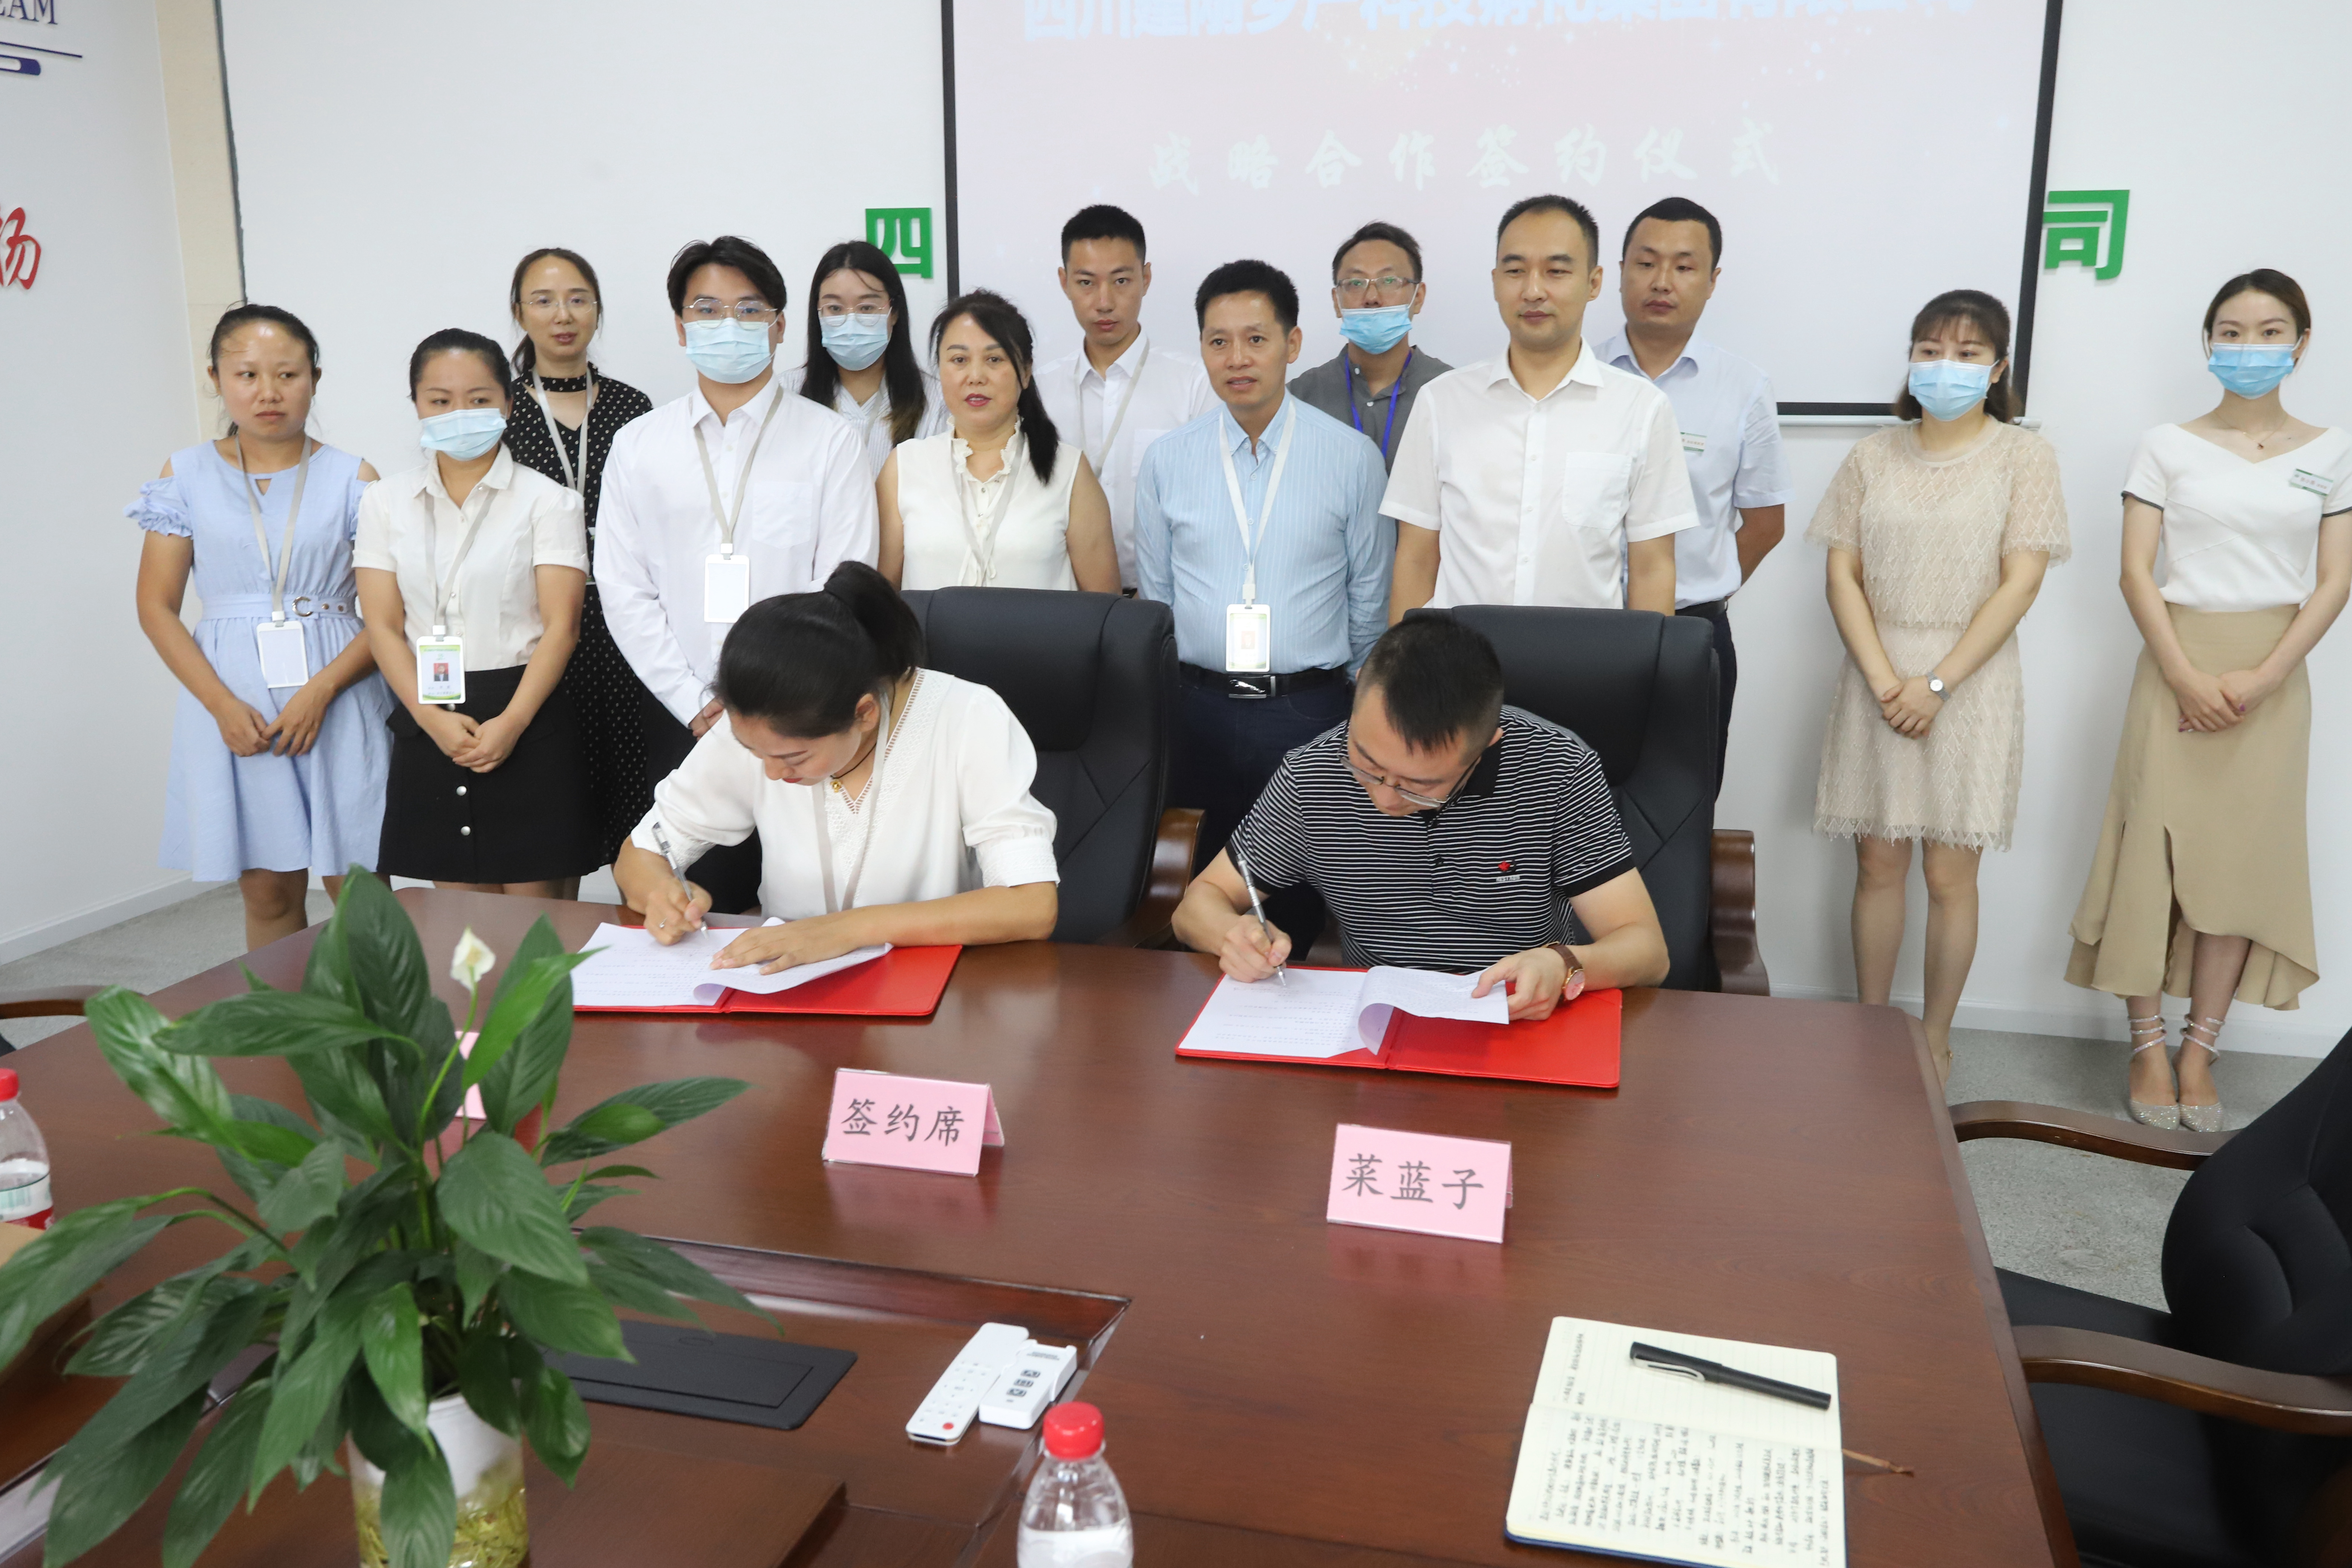 彭山建刚乡产科技孵化集团与四川菜蓝子公司签约亿元供销合作协议